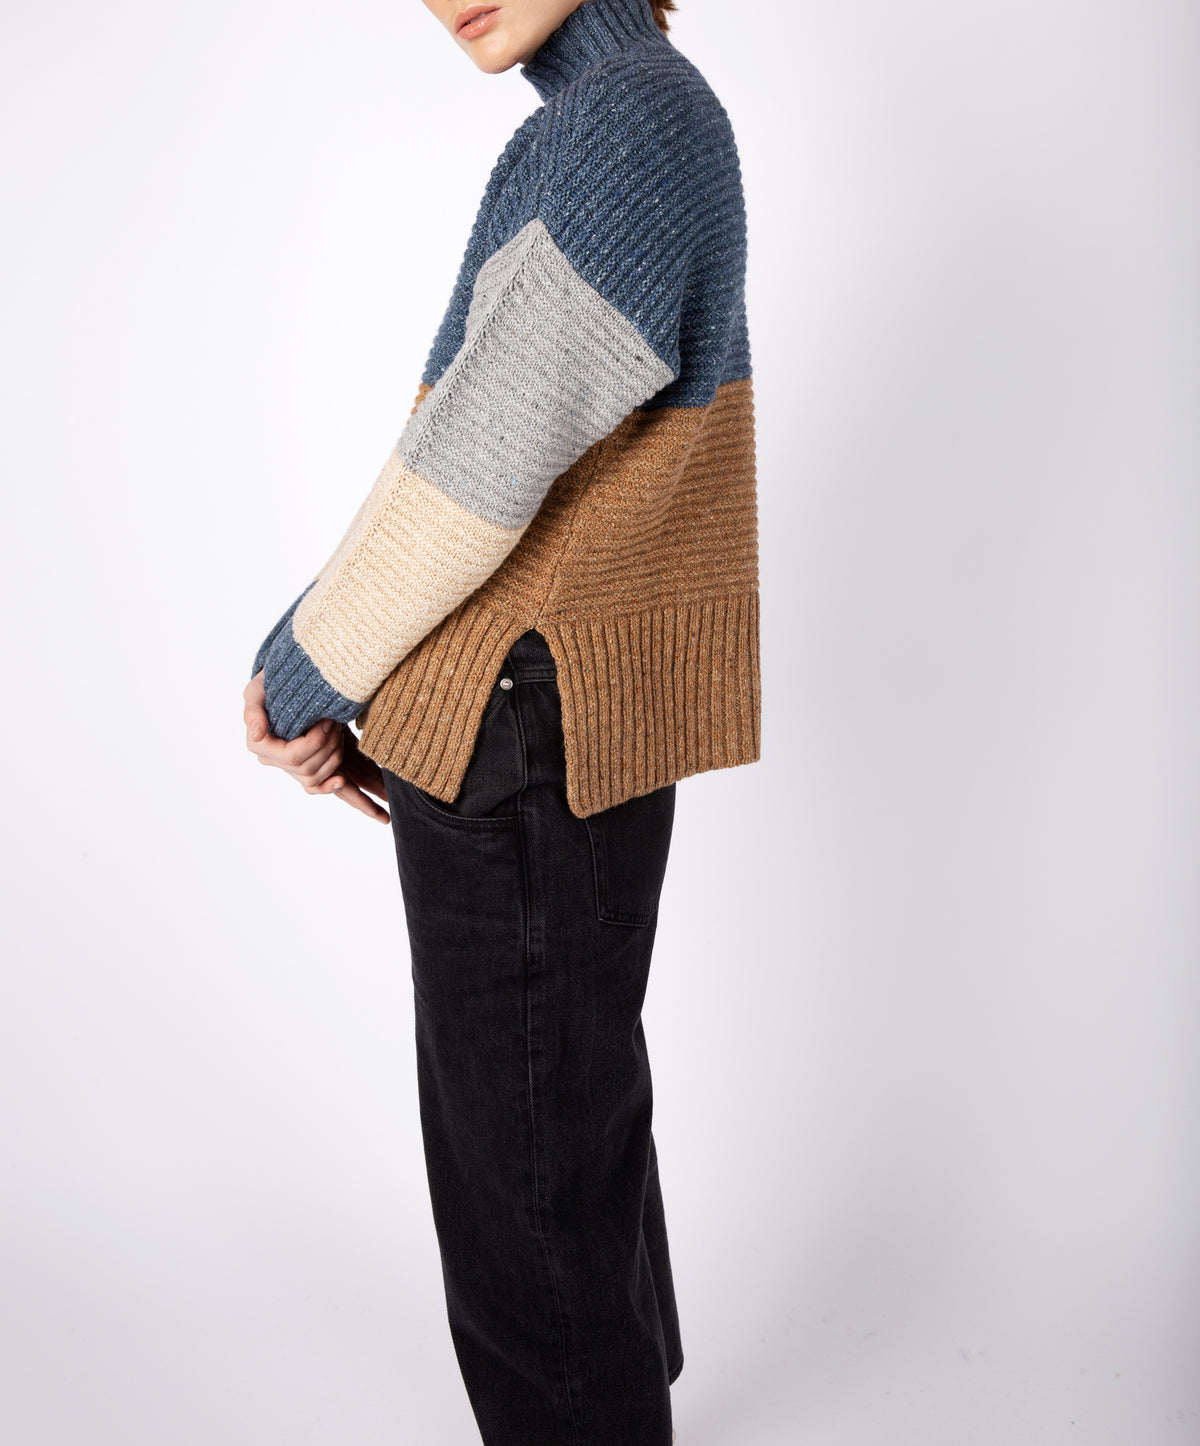 IrelandsEye Knitwear Women's Knitted 'Iris' Contrast Panel Funnel Neck Sweater Seaspray Biscuit